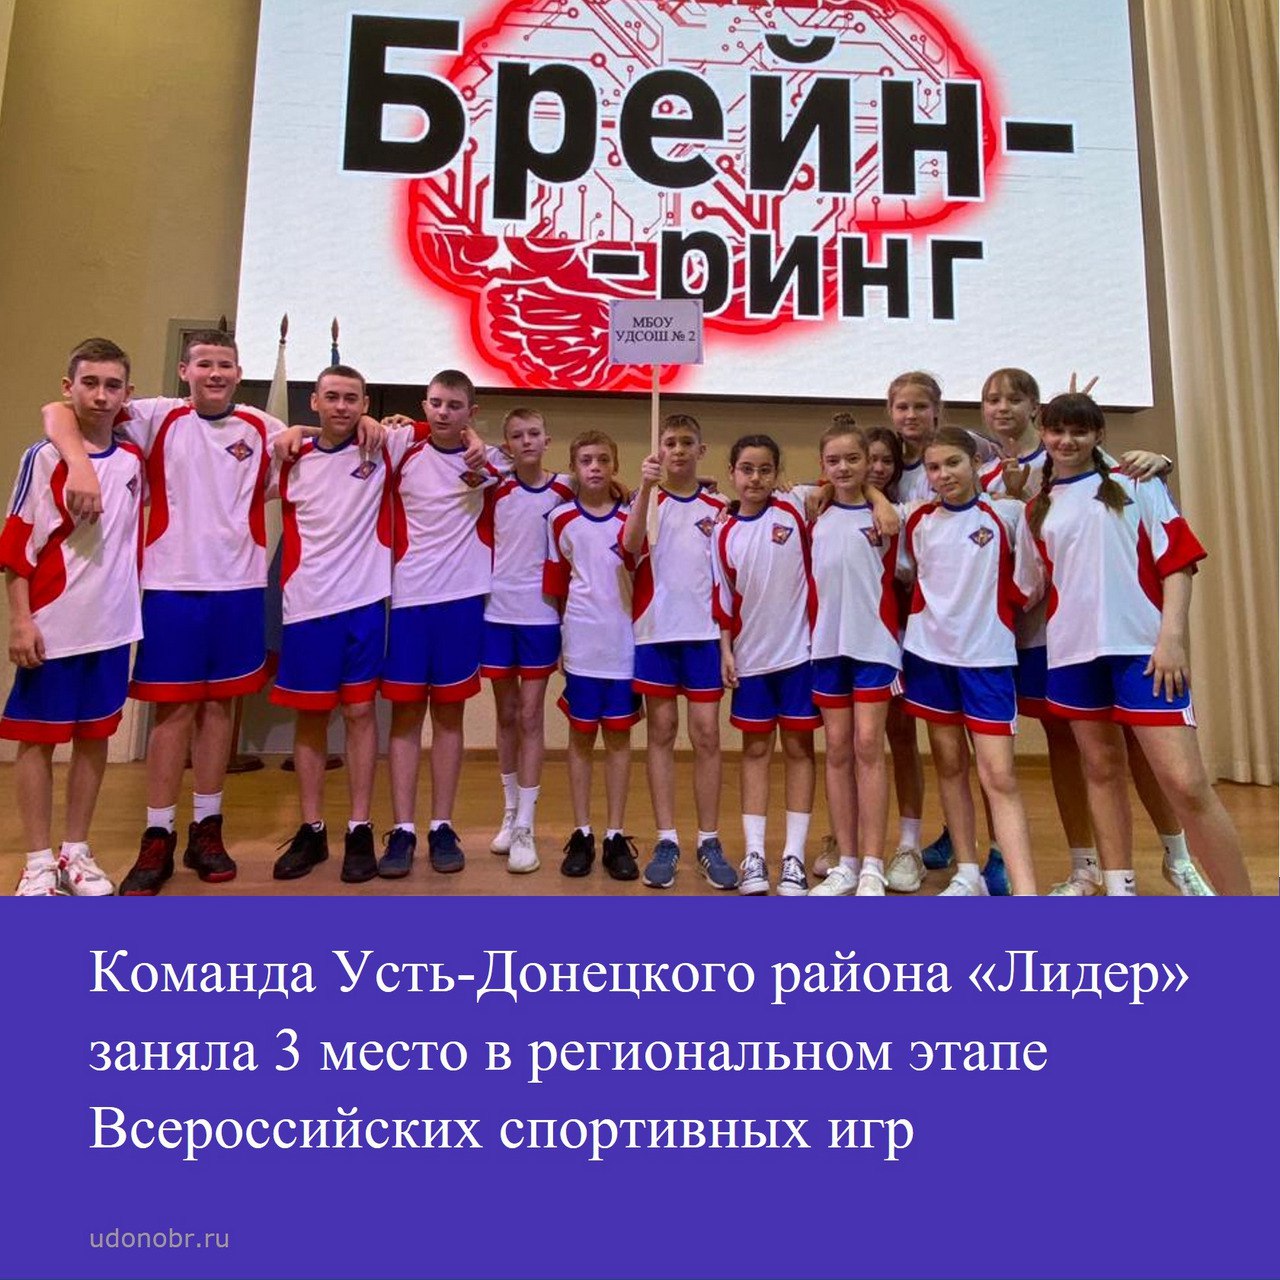 Команда Усть-Донецкого района «Лидер» заняла 3 место в региональном этапе Всероссийских спортивных игр